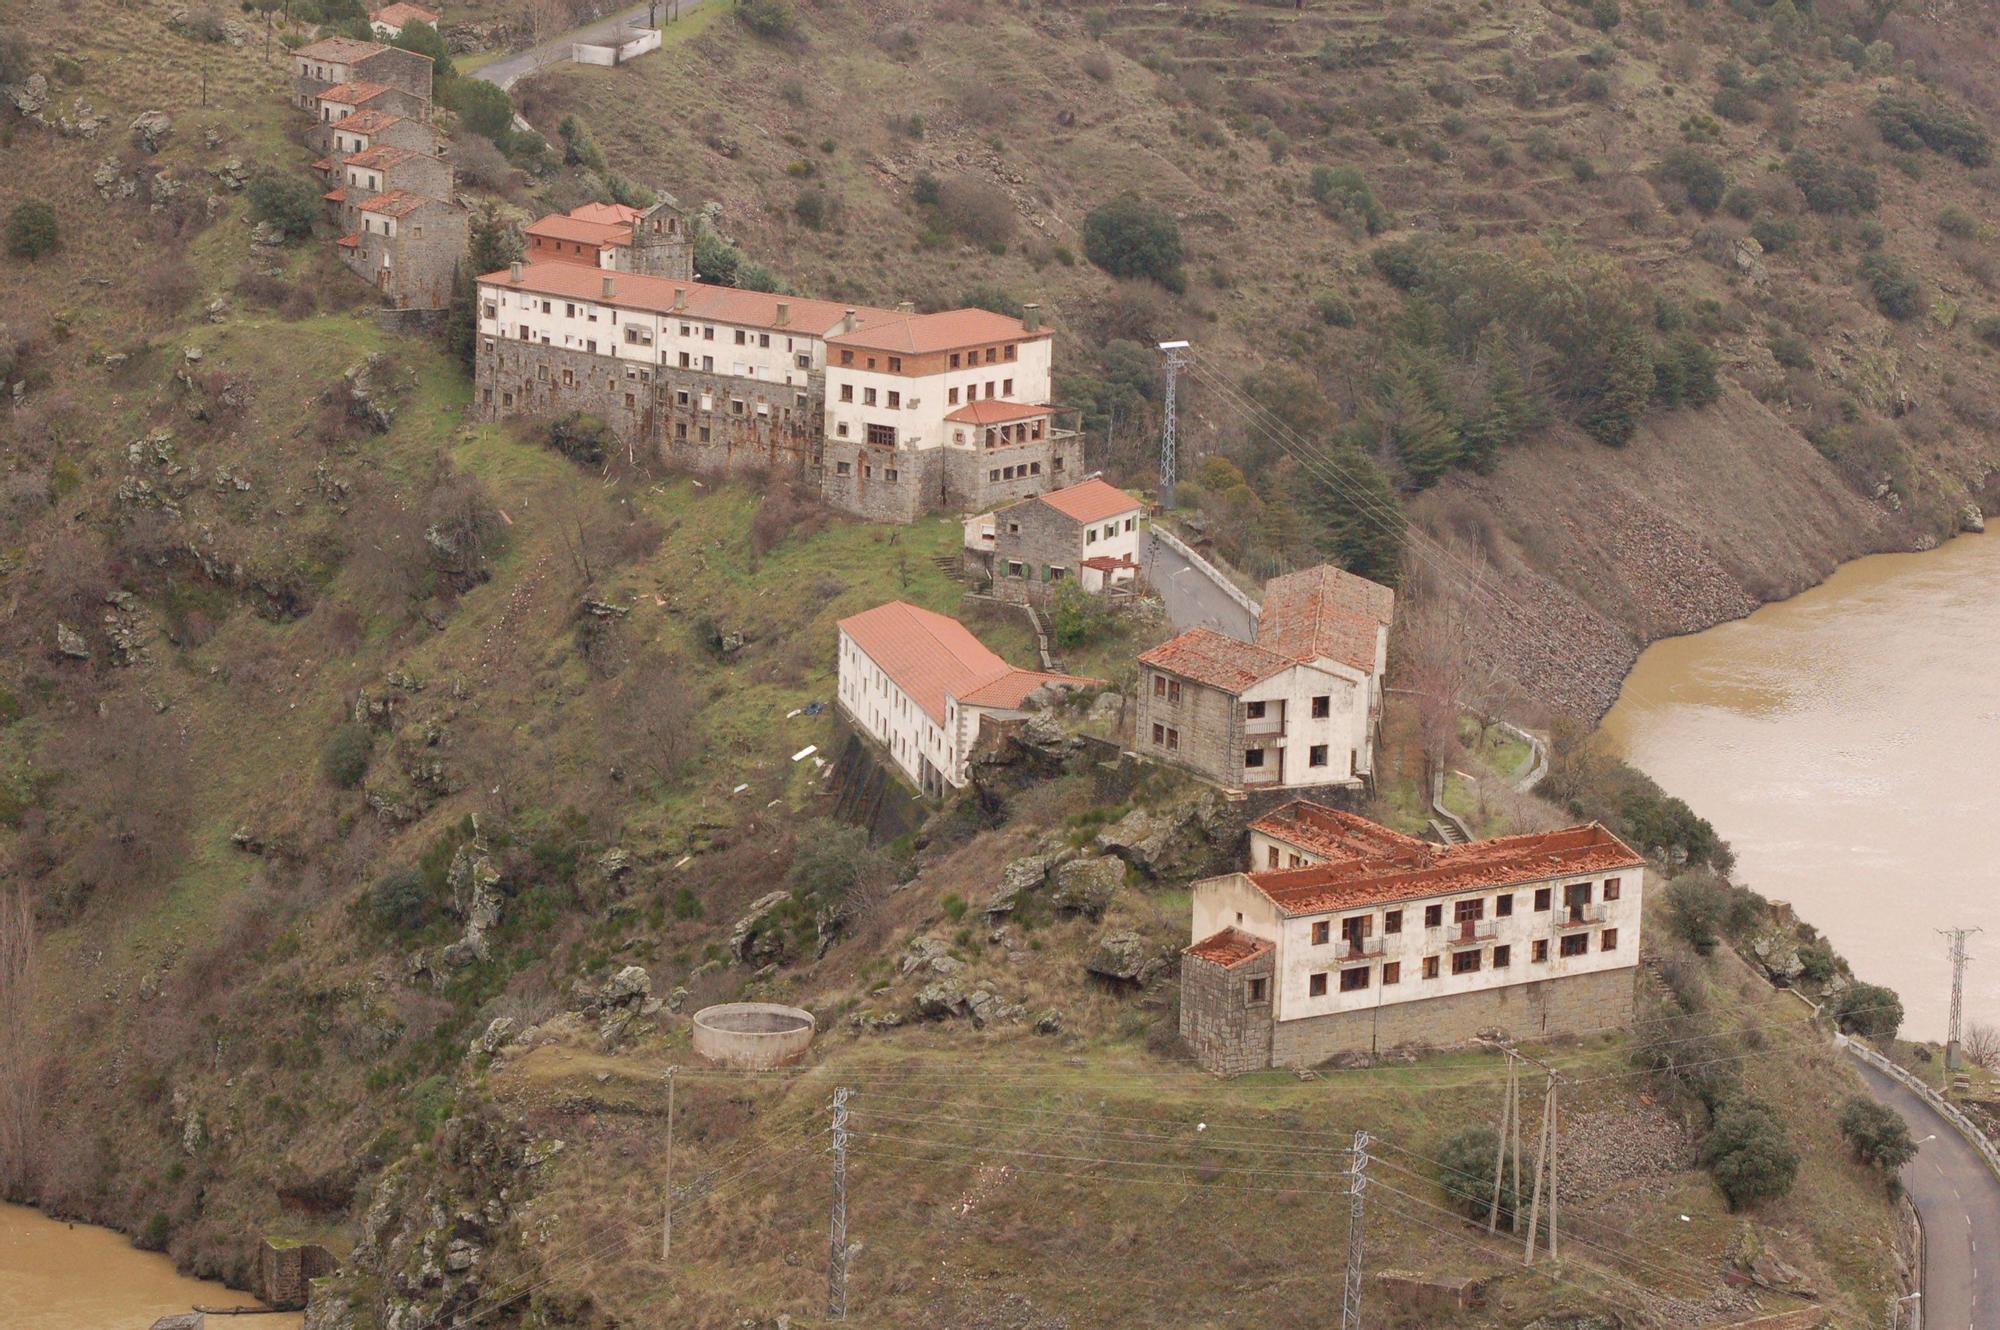 Un vecino de Bueu vende un pueblo abandonado en Zamora